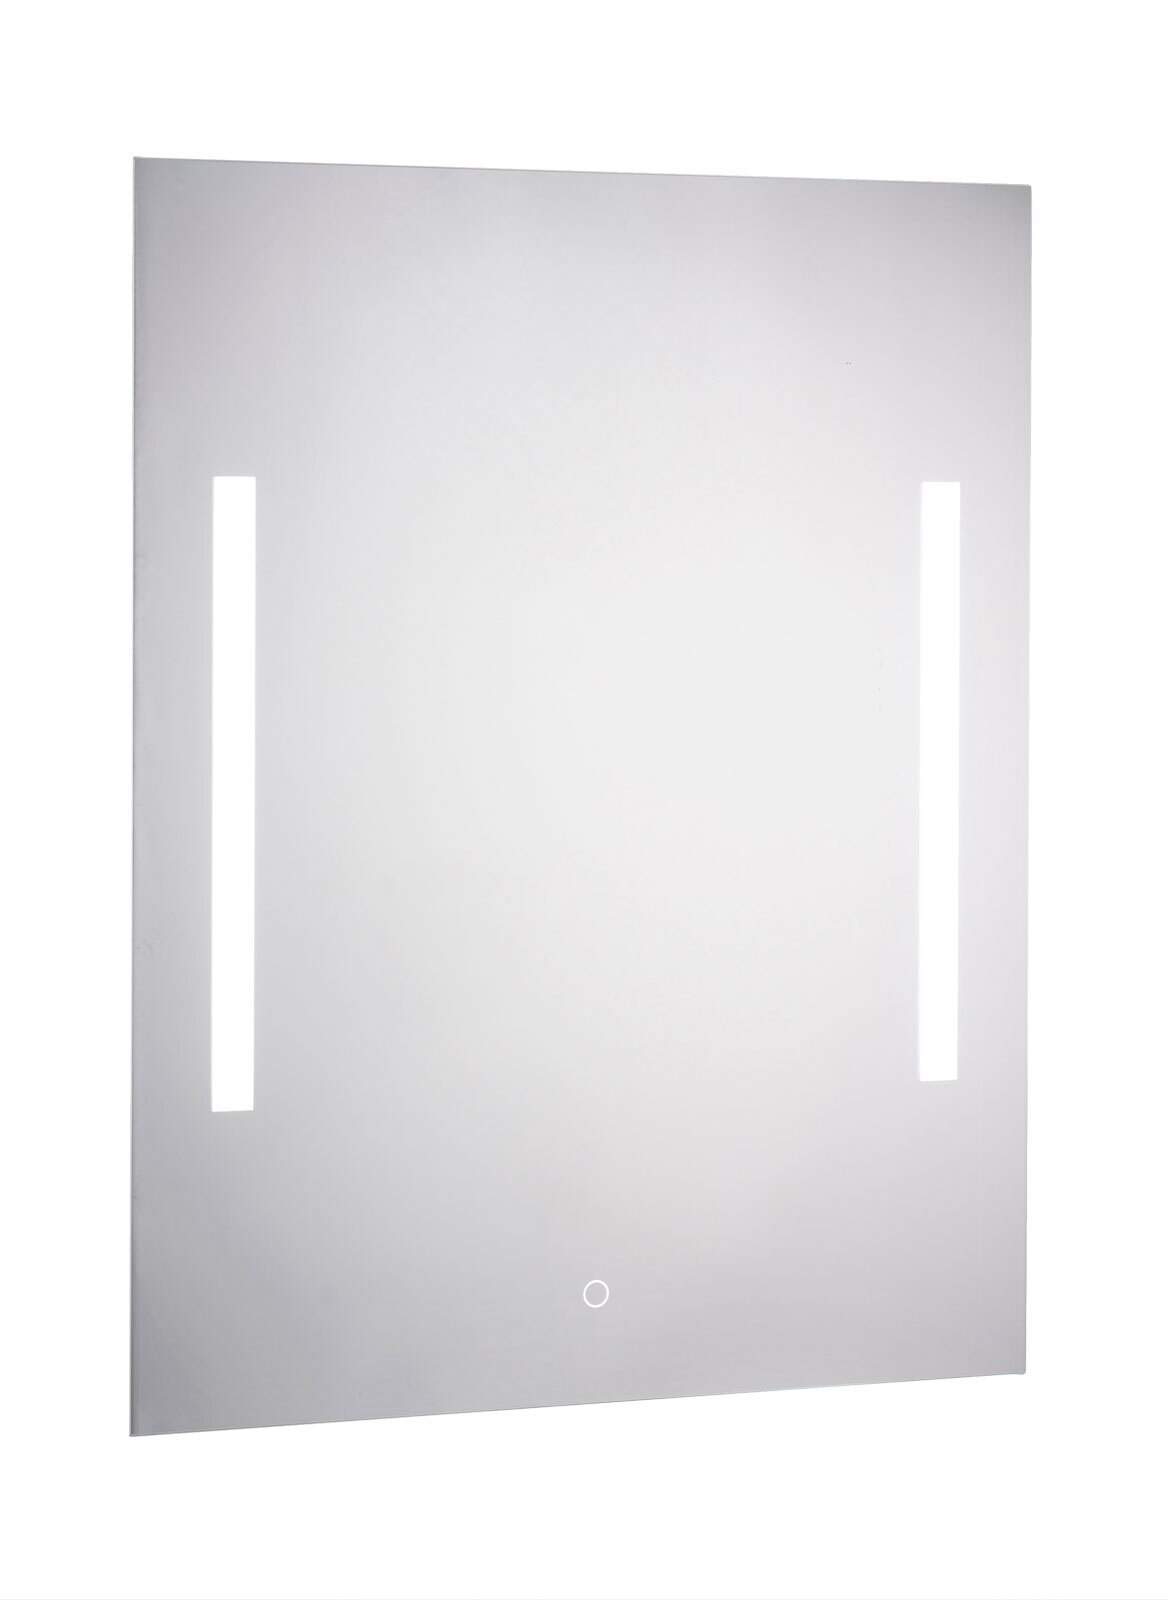 CASAVANTI Badspiegel beleuchtet mit LED 50 x 70 x 2,5 cm Spiegelglas 